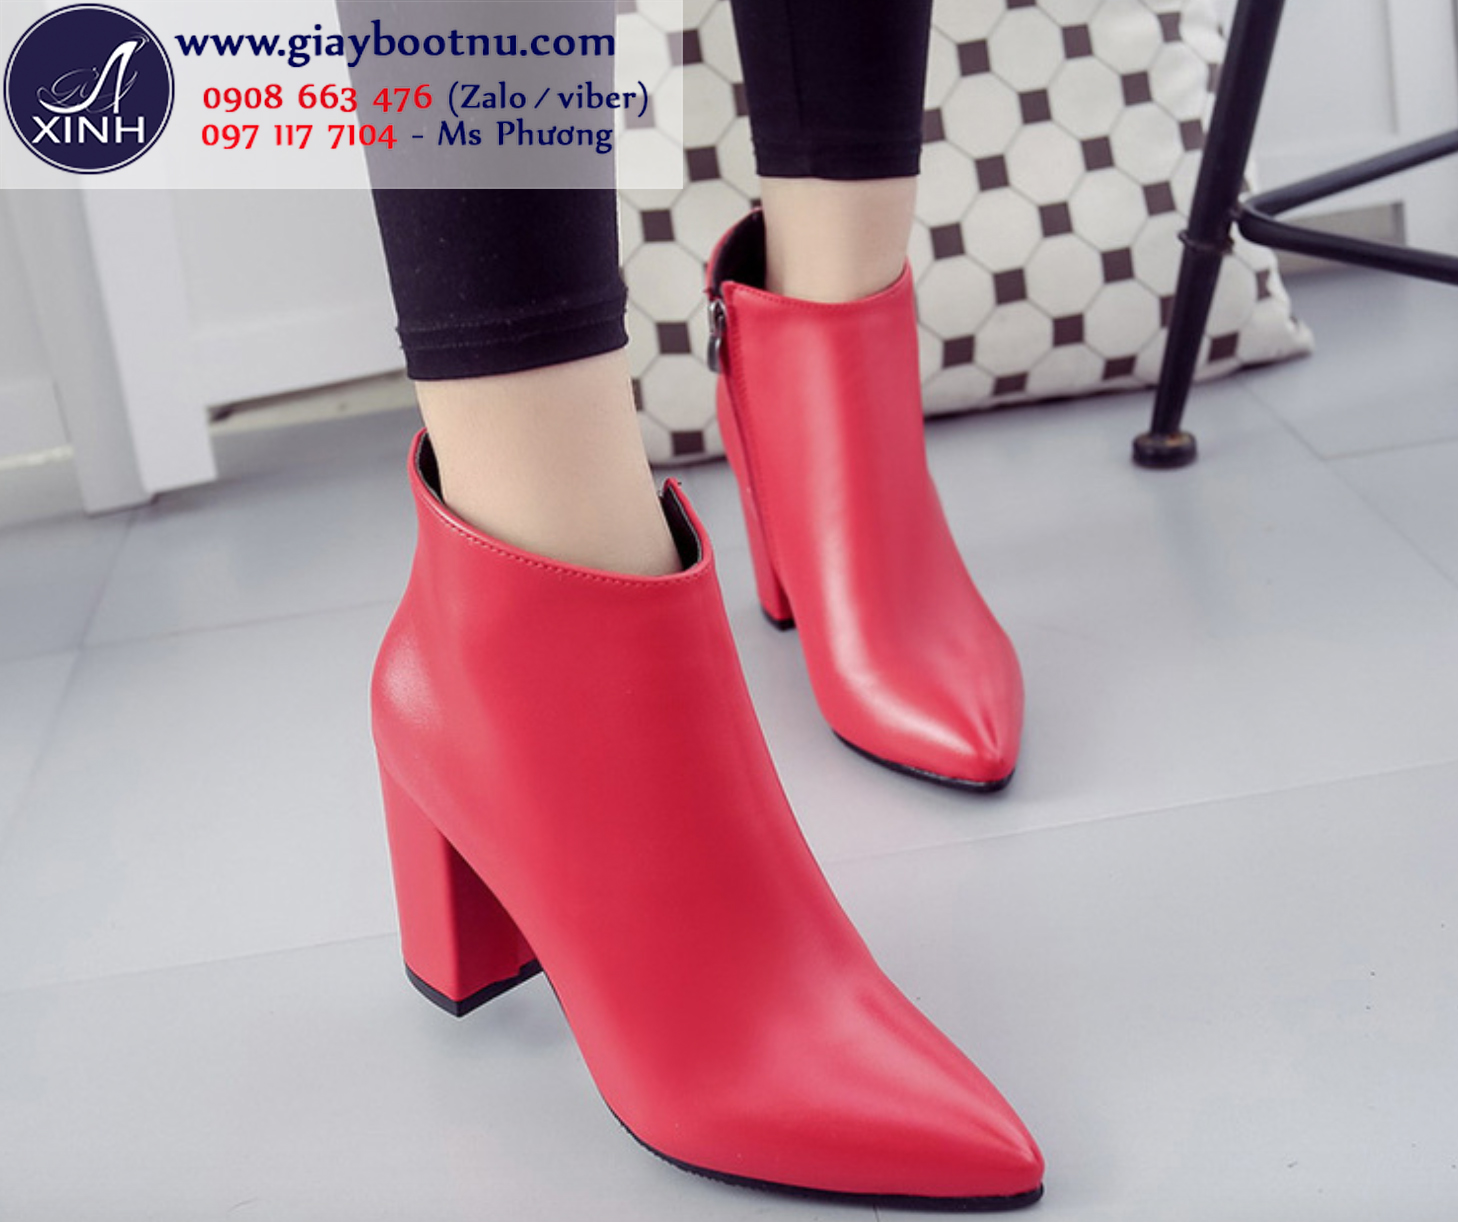 Giày boot nữ đơn giản màu đỏ cho bạn rực rỡ đêm tiệc!